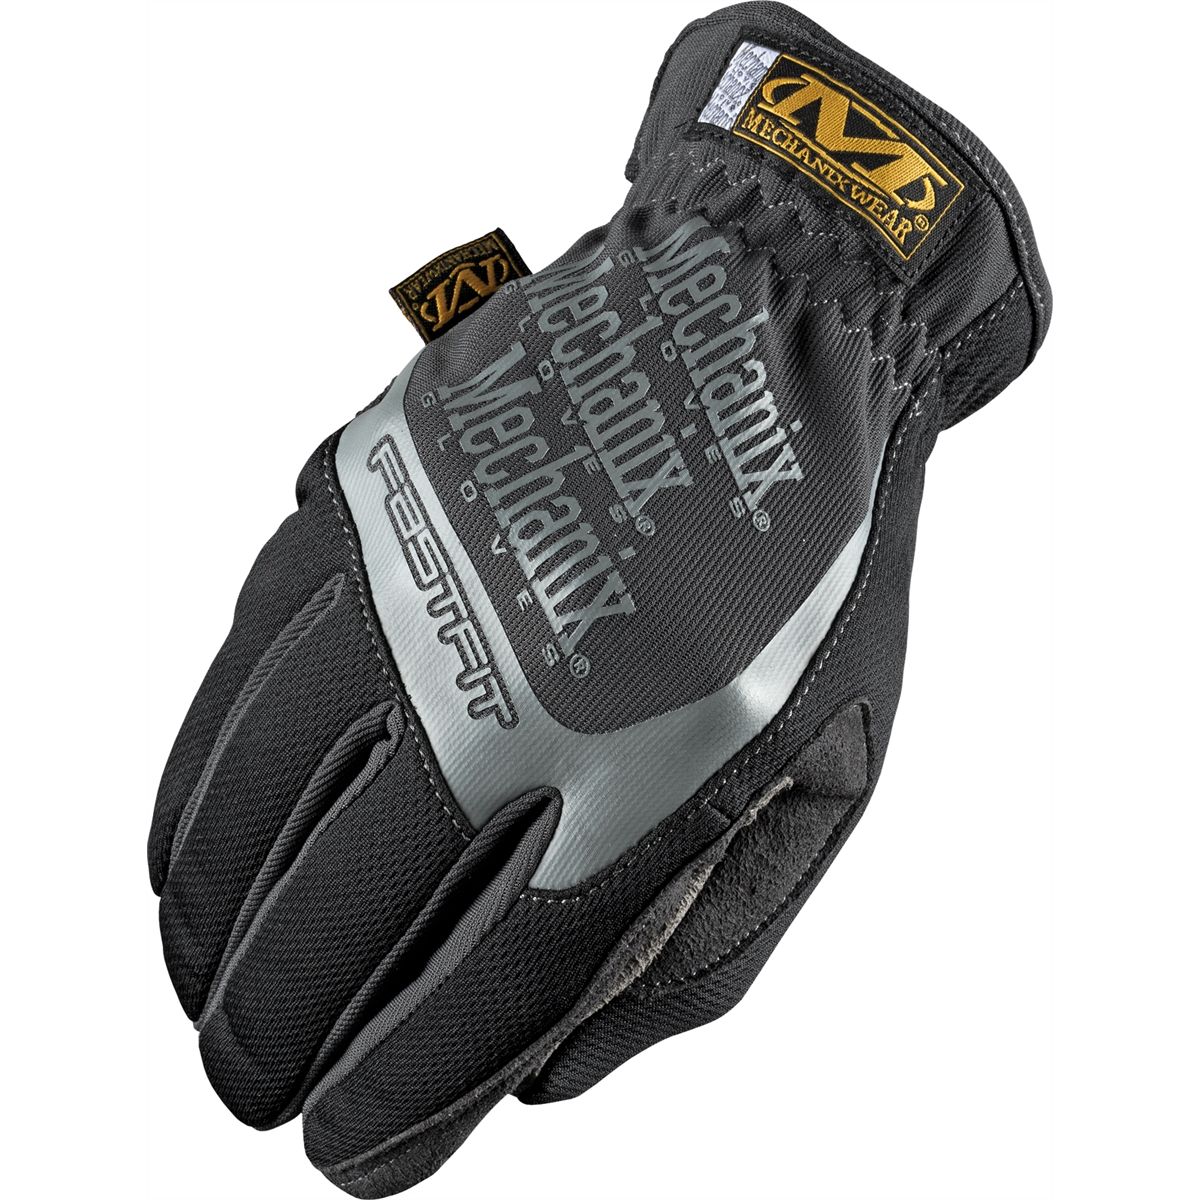 FastFit Gloves - Black - Large